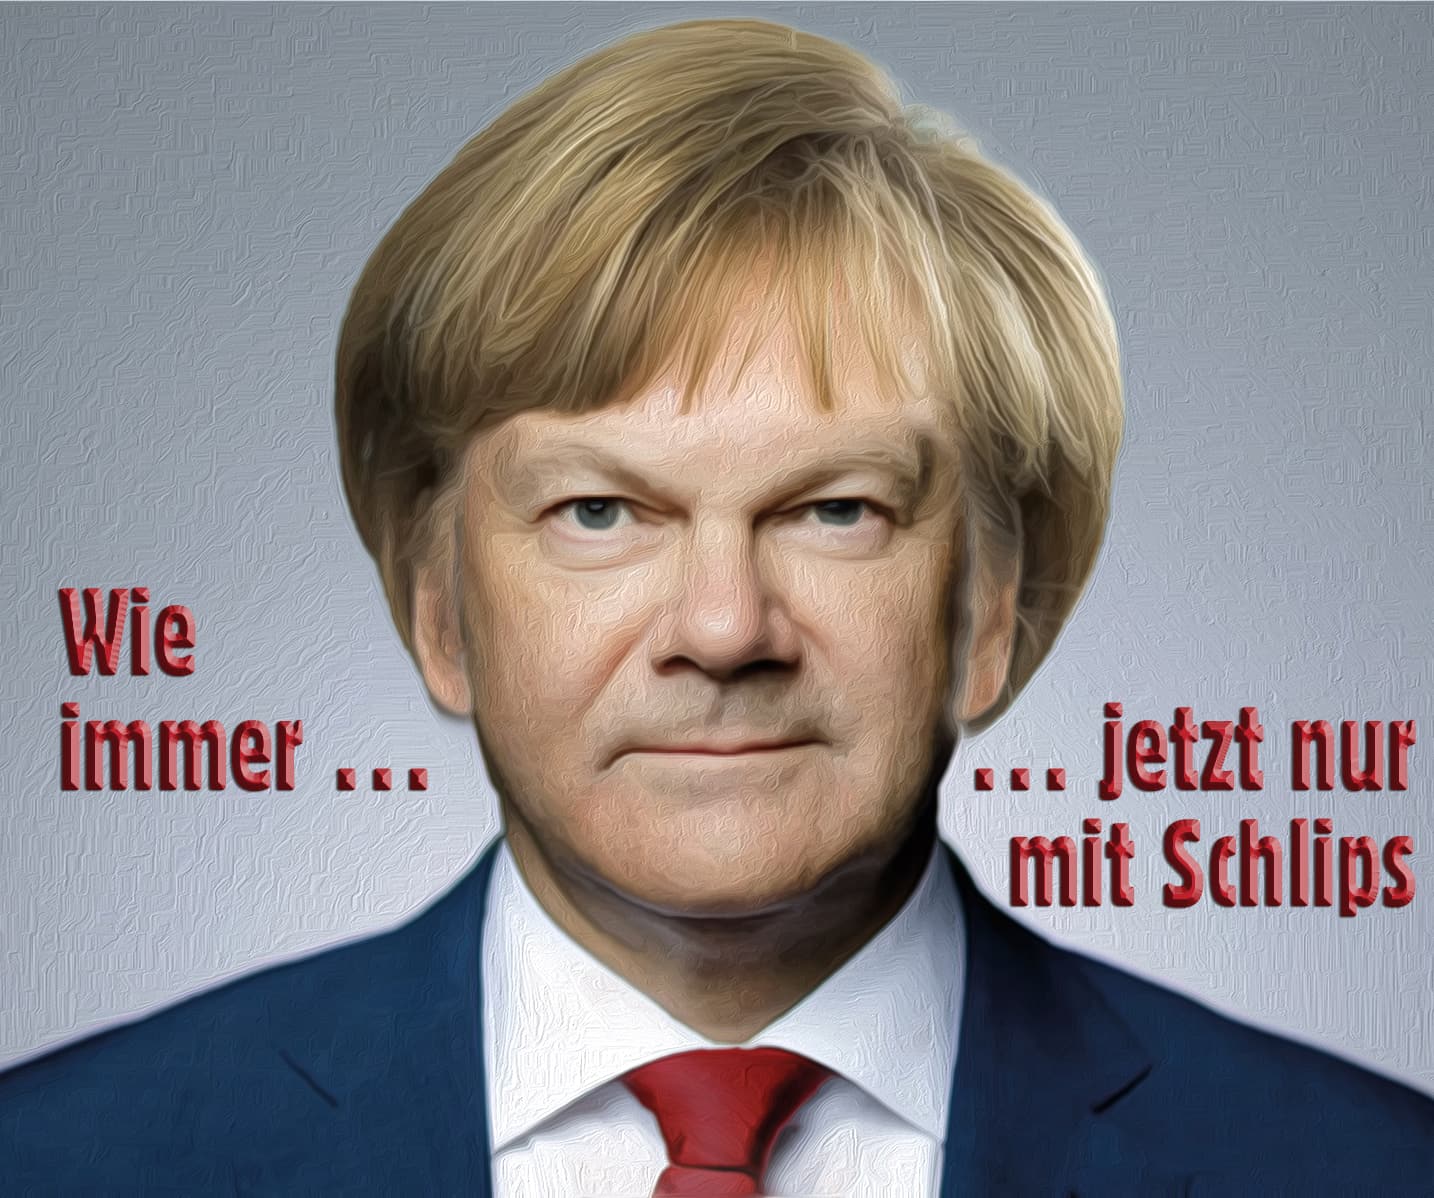 Olaf-Scholz-Merkel-Style-Politik-wie-immer-jetzt-nur-mit-schlips